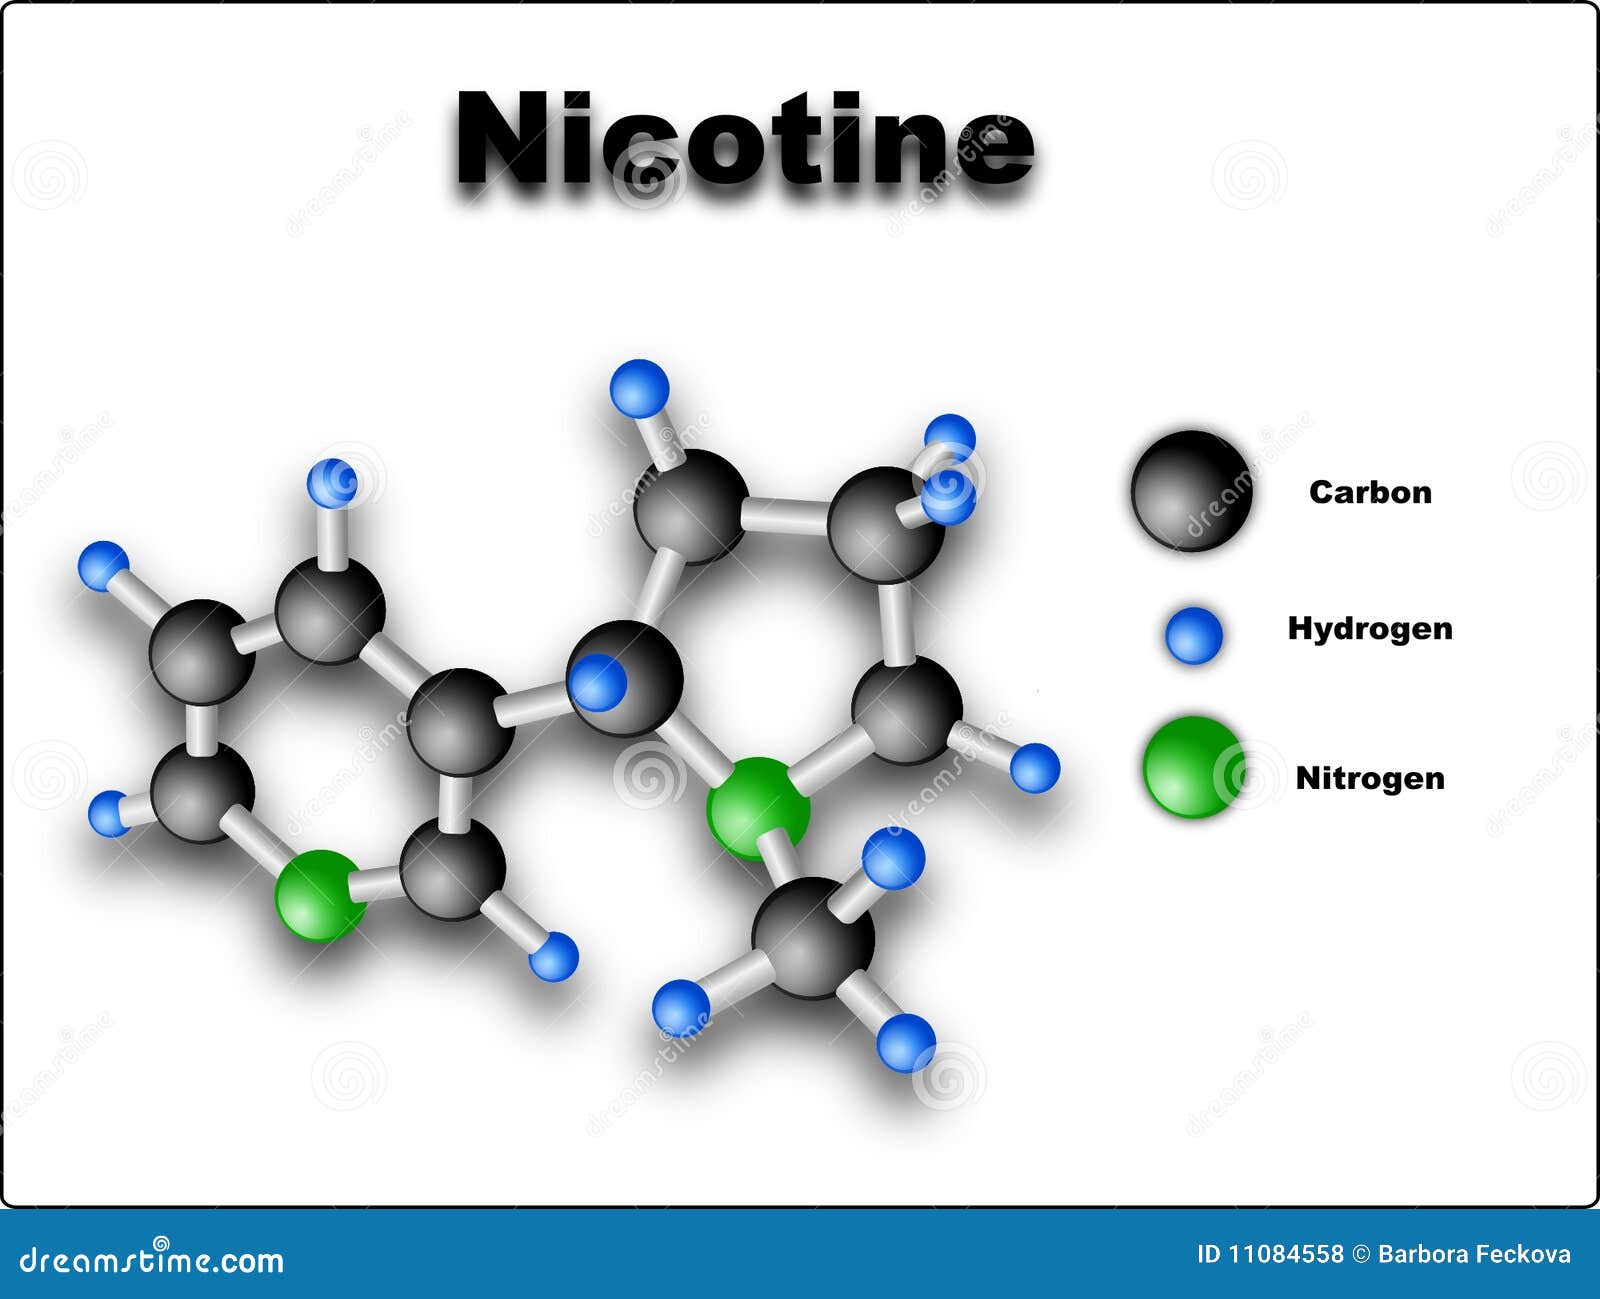 nicotine-molecule-11084558.jpg